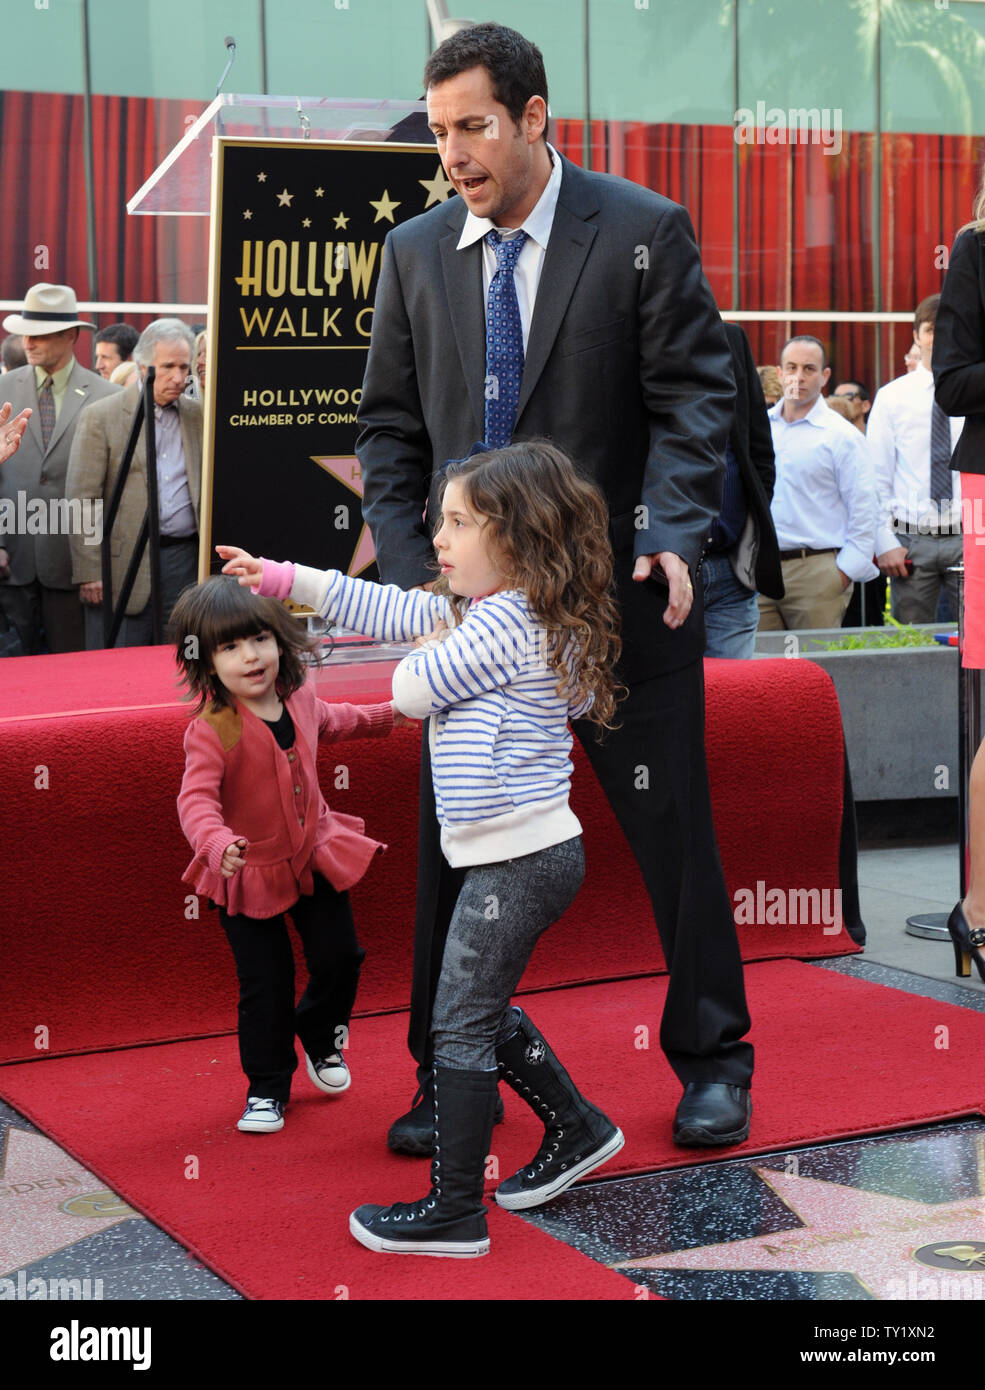 Schauspieler Adam Sandler rundet seine Töchter sonnig (L) und Sadie während einer enthüllungsfeier ihn ehrt mit der 2,431 st Stern auf dem Hollywood des Ruhmes in Los Angeles am 1. Februar 2011. UPI/Jim Ruymen Stockfoto